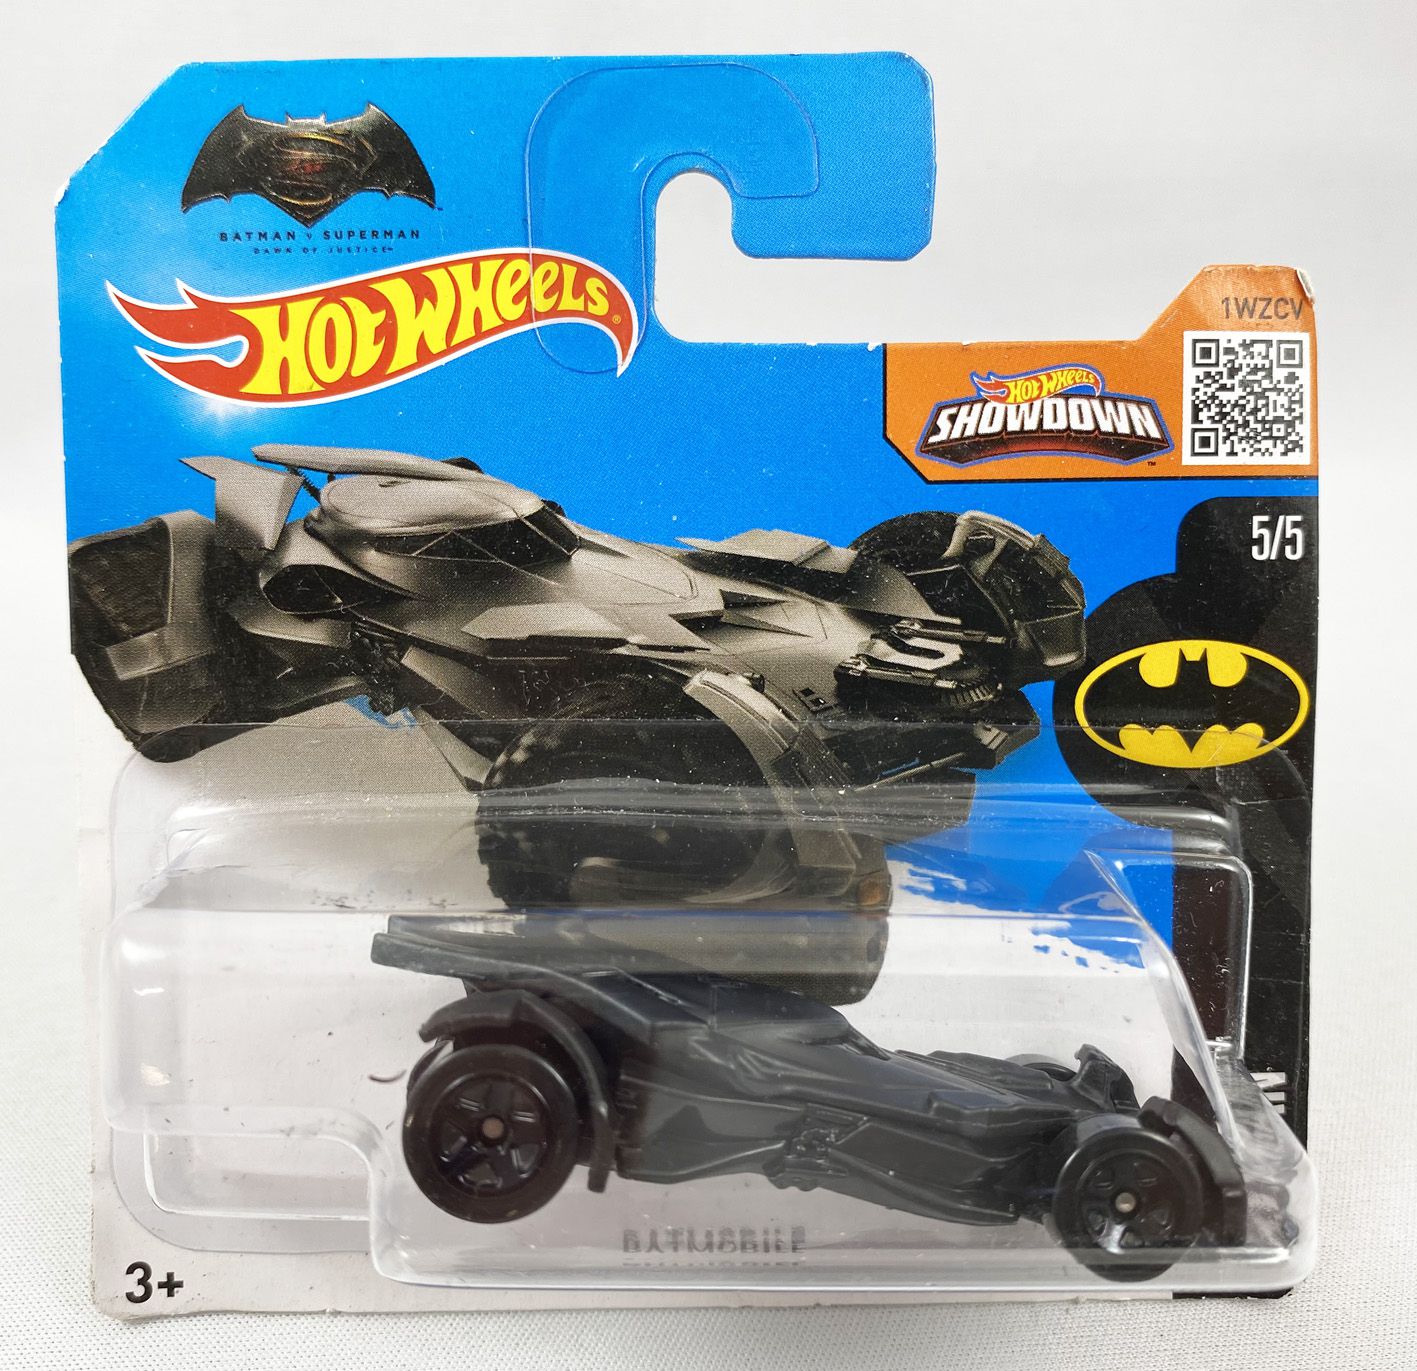 Carrinho Hot Wheels - Batman vs Superman Batmobile - 1:64 - Mattel -  superlegalbrinquedos